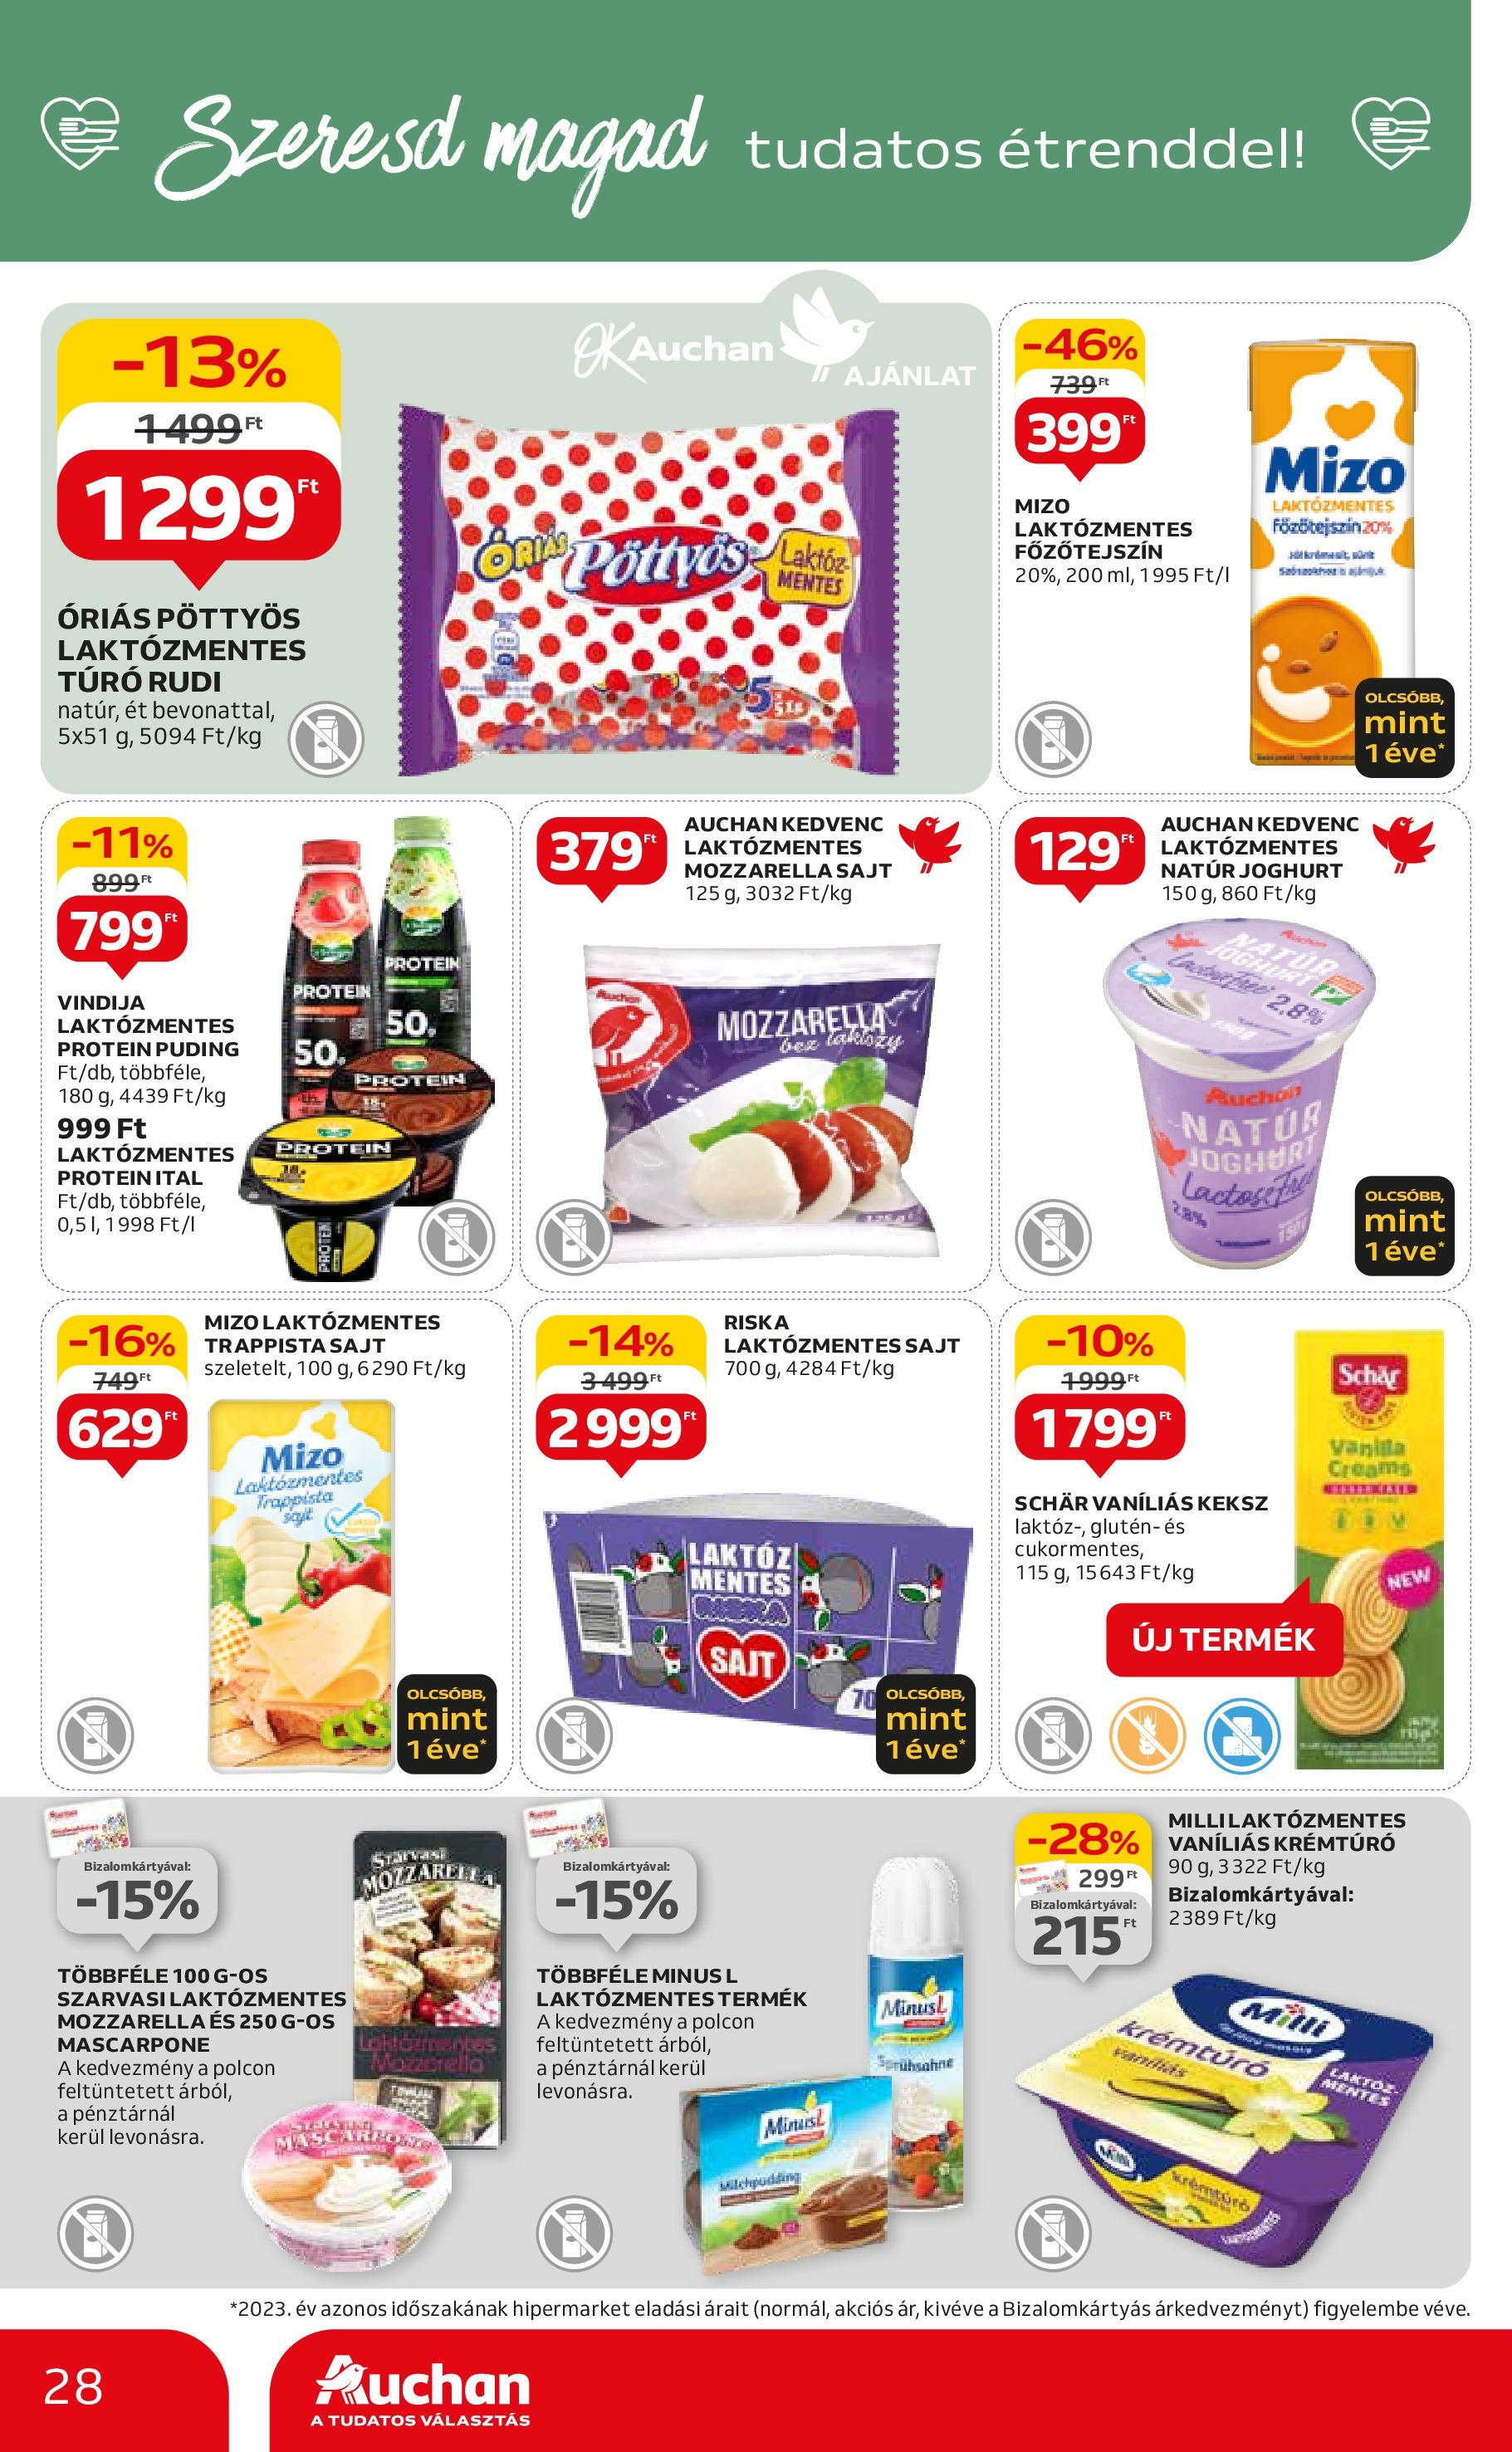 Auchan  Akciós újság - 2024.04.25. -tól/töl > akció, szórólap 🛍️ | Oldal: 28 | Termékek: Főzőtejszín, Laktózmentes főzőtejszín, Protein, Trappista sajt